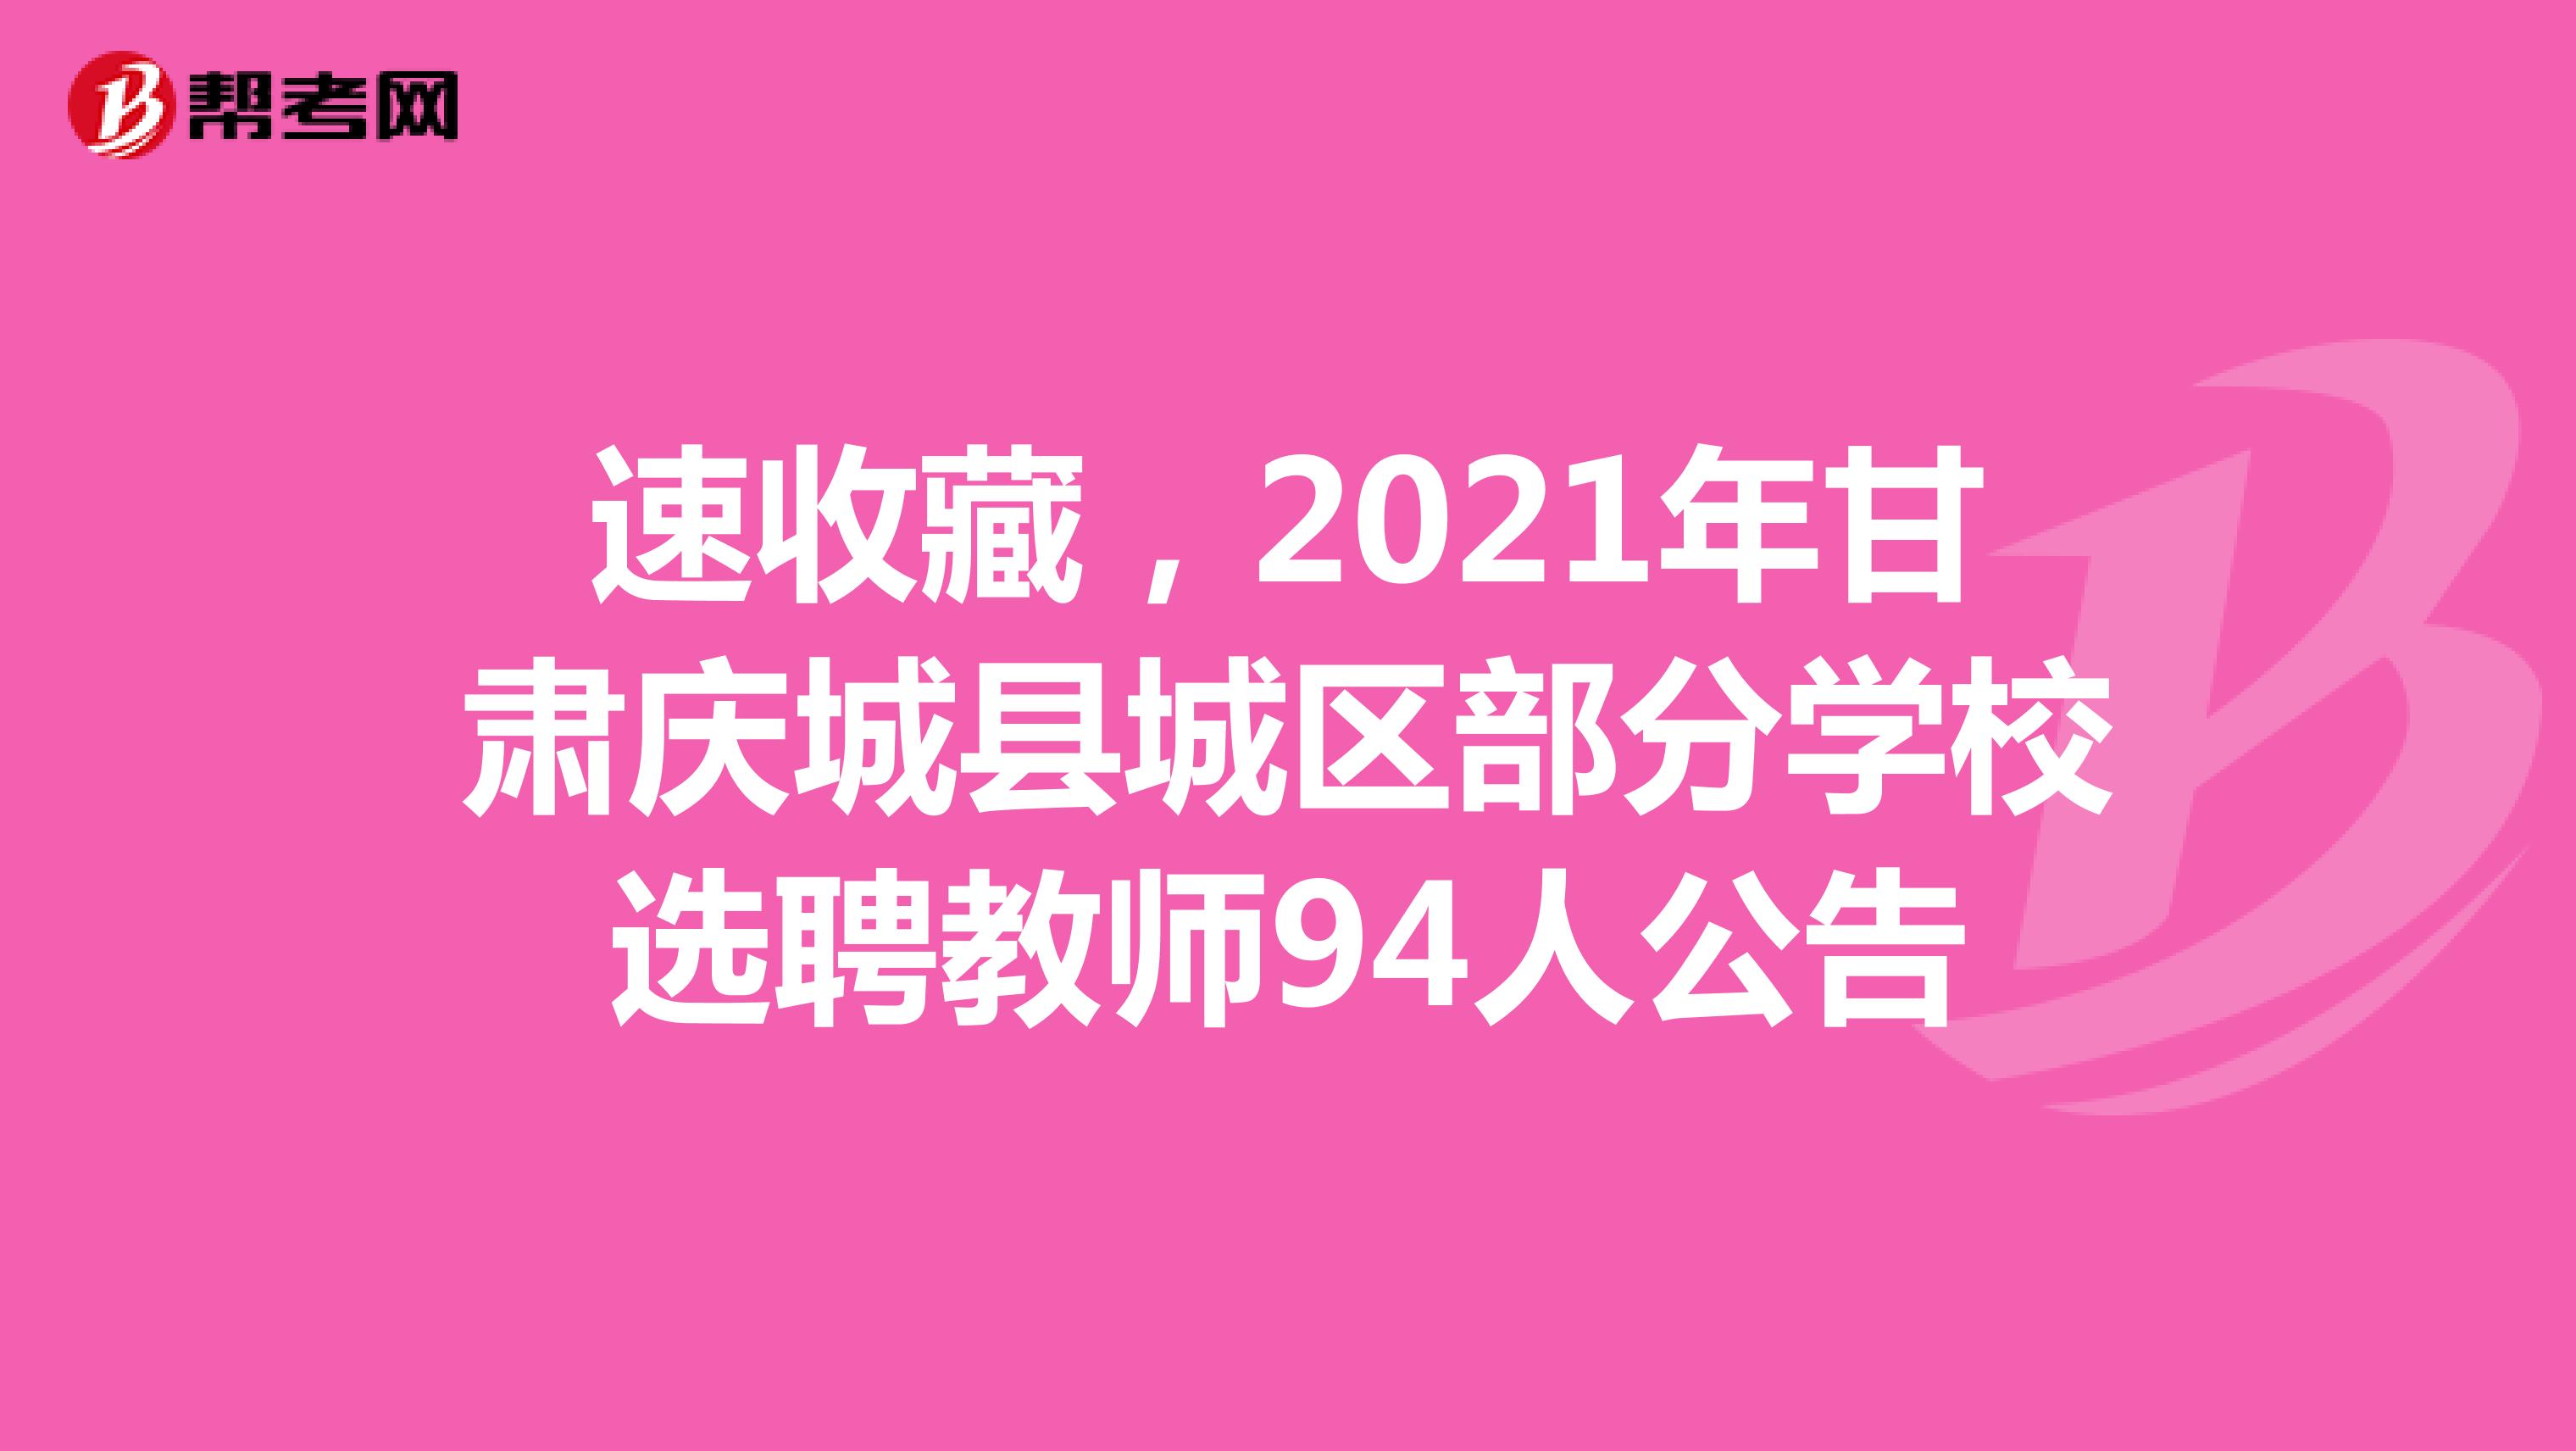 速收藏，2021年甘肃庆城县城区部分学校选聘教师94人公告